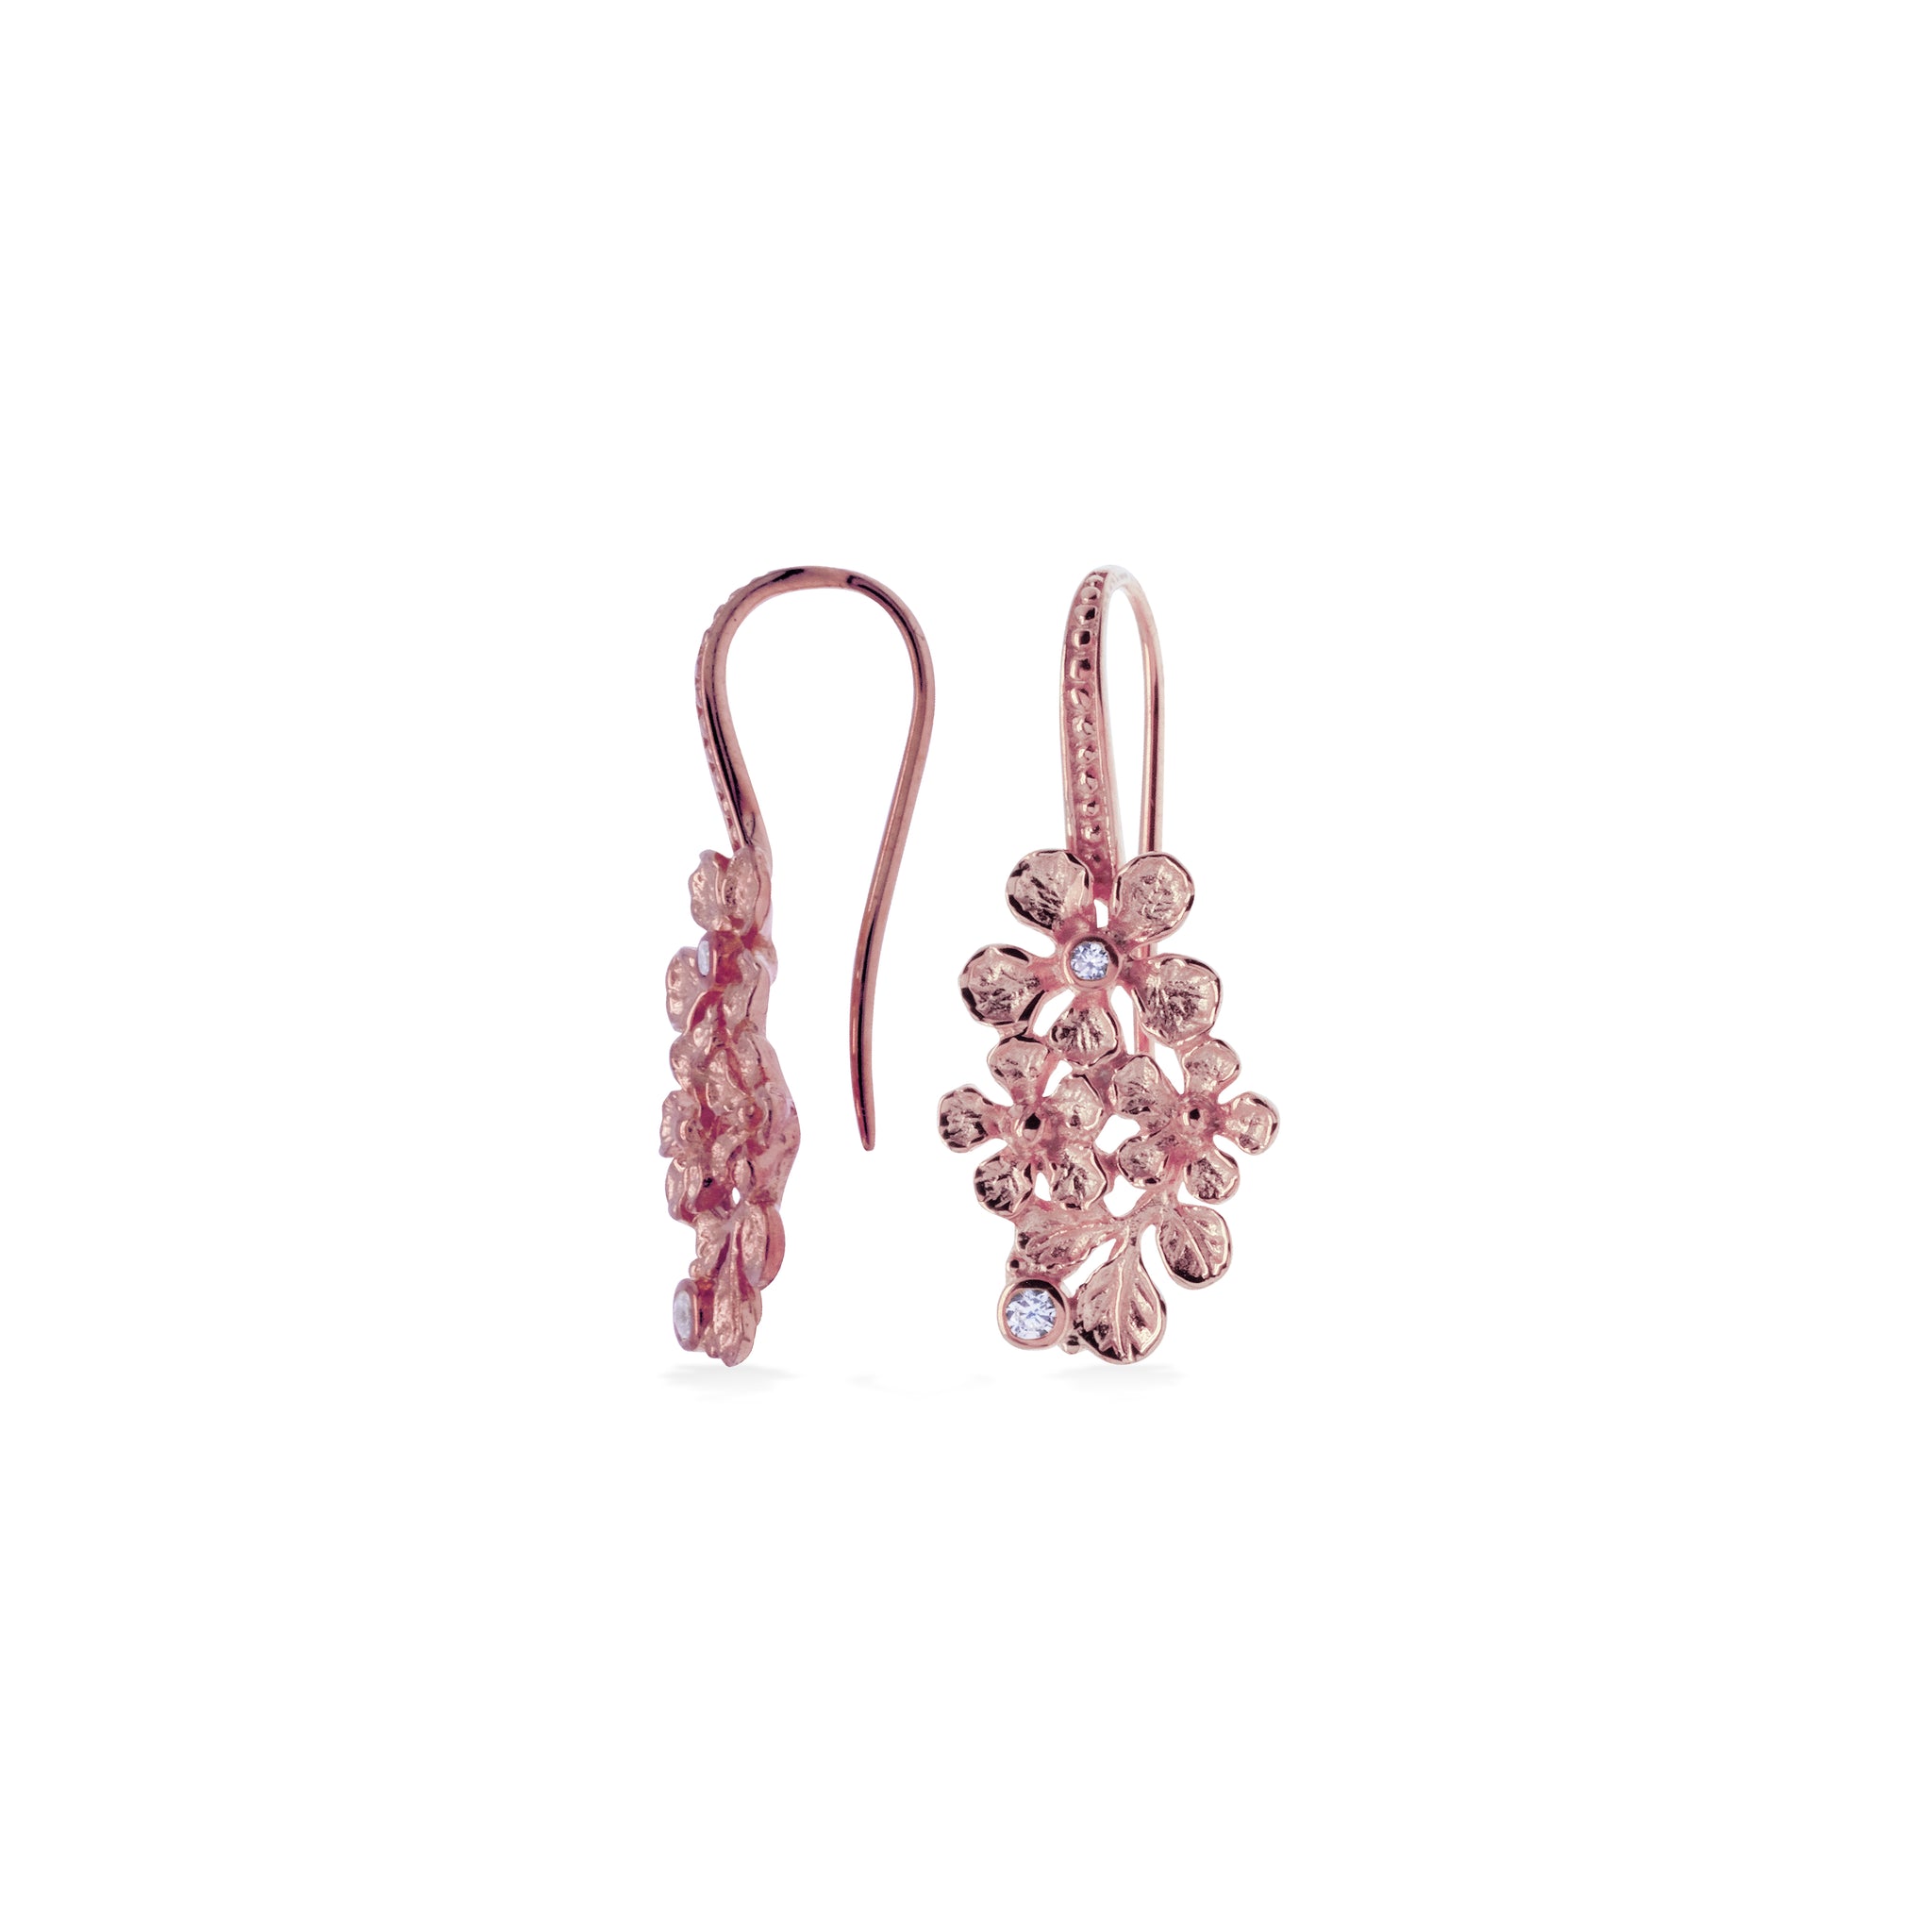 Anting Perak 925 Koleksi Flamboyan Dangling Earrings Rose Gold Plated